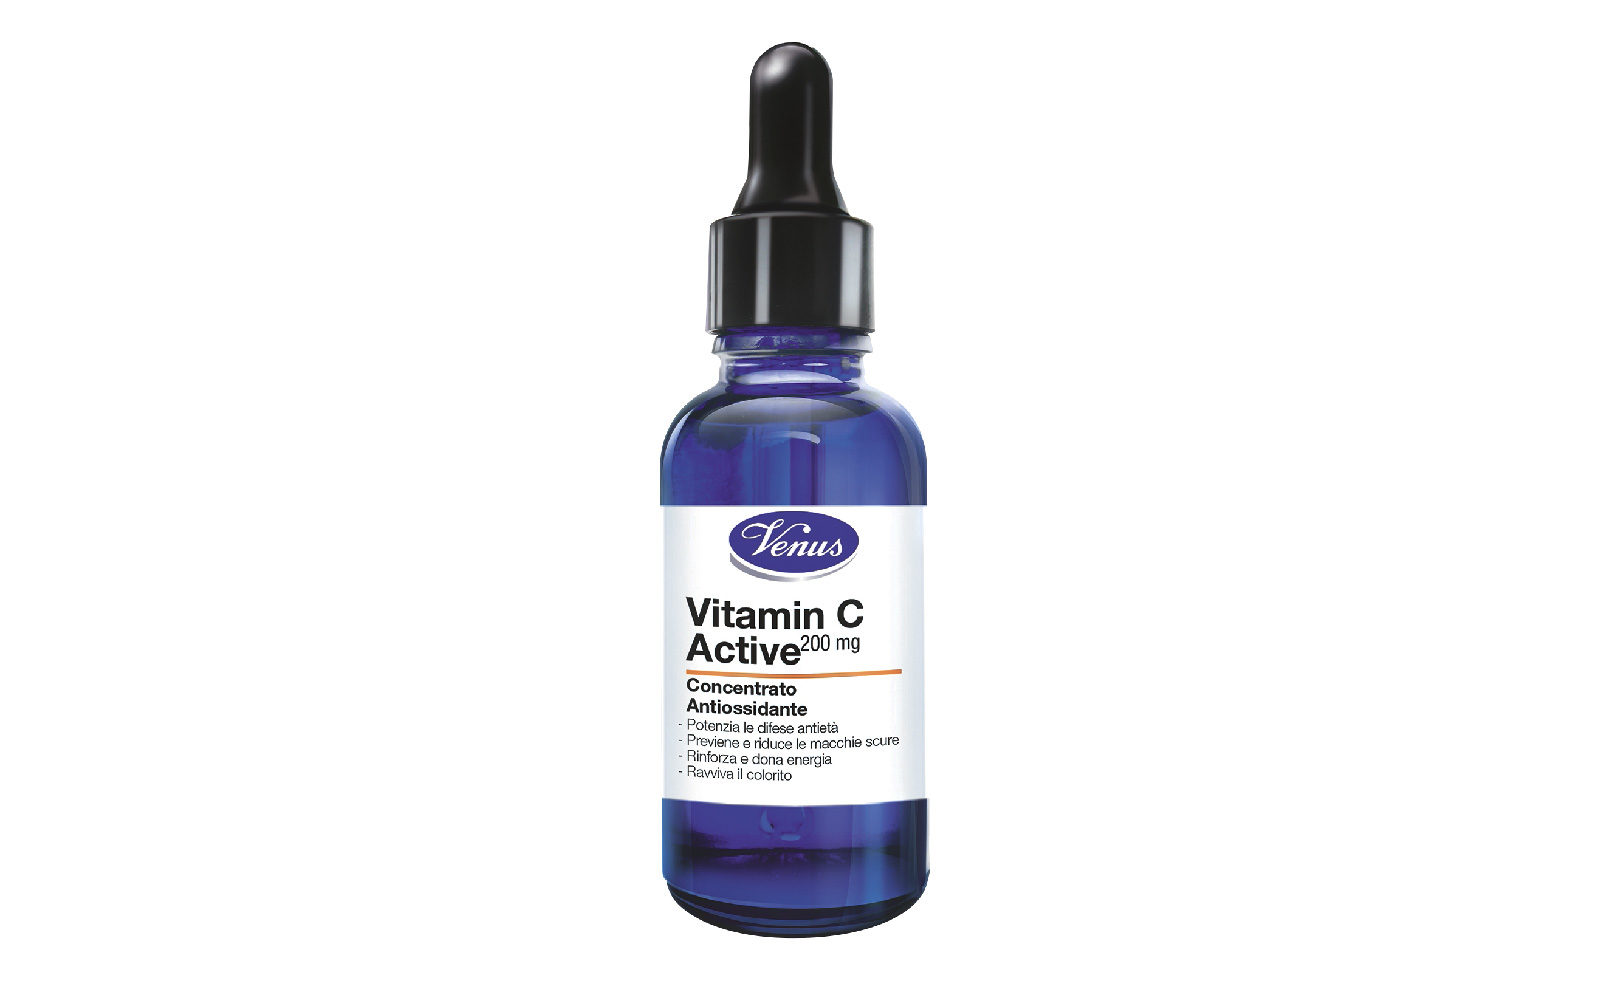 Venus Vitamine C Active è un concentrato antiossidante che stimola la produzione di collagene e uniforma la pelle (grande distribuzione, 10,99 euro).